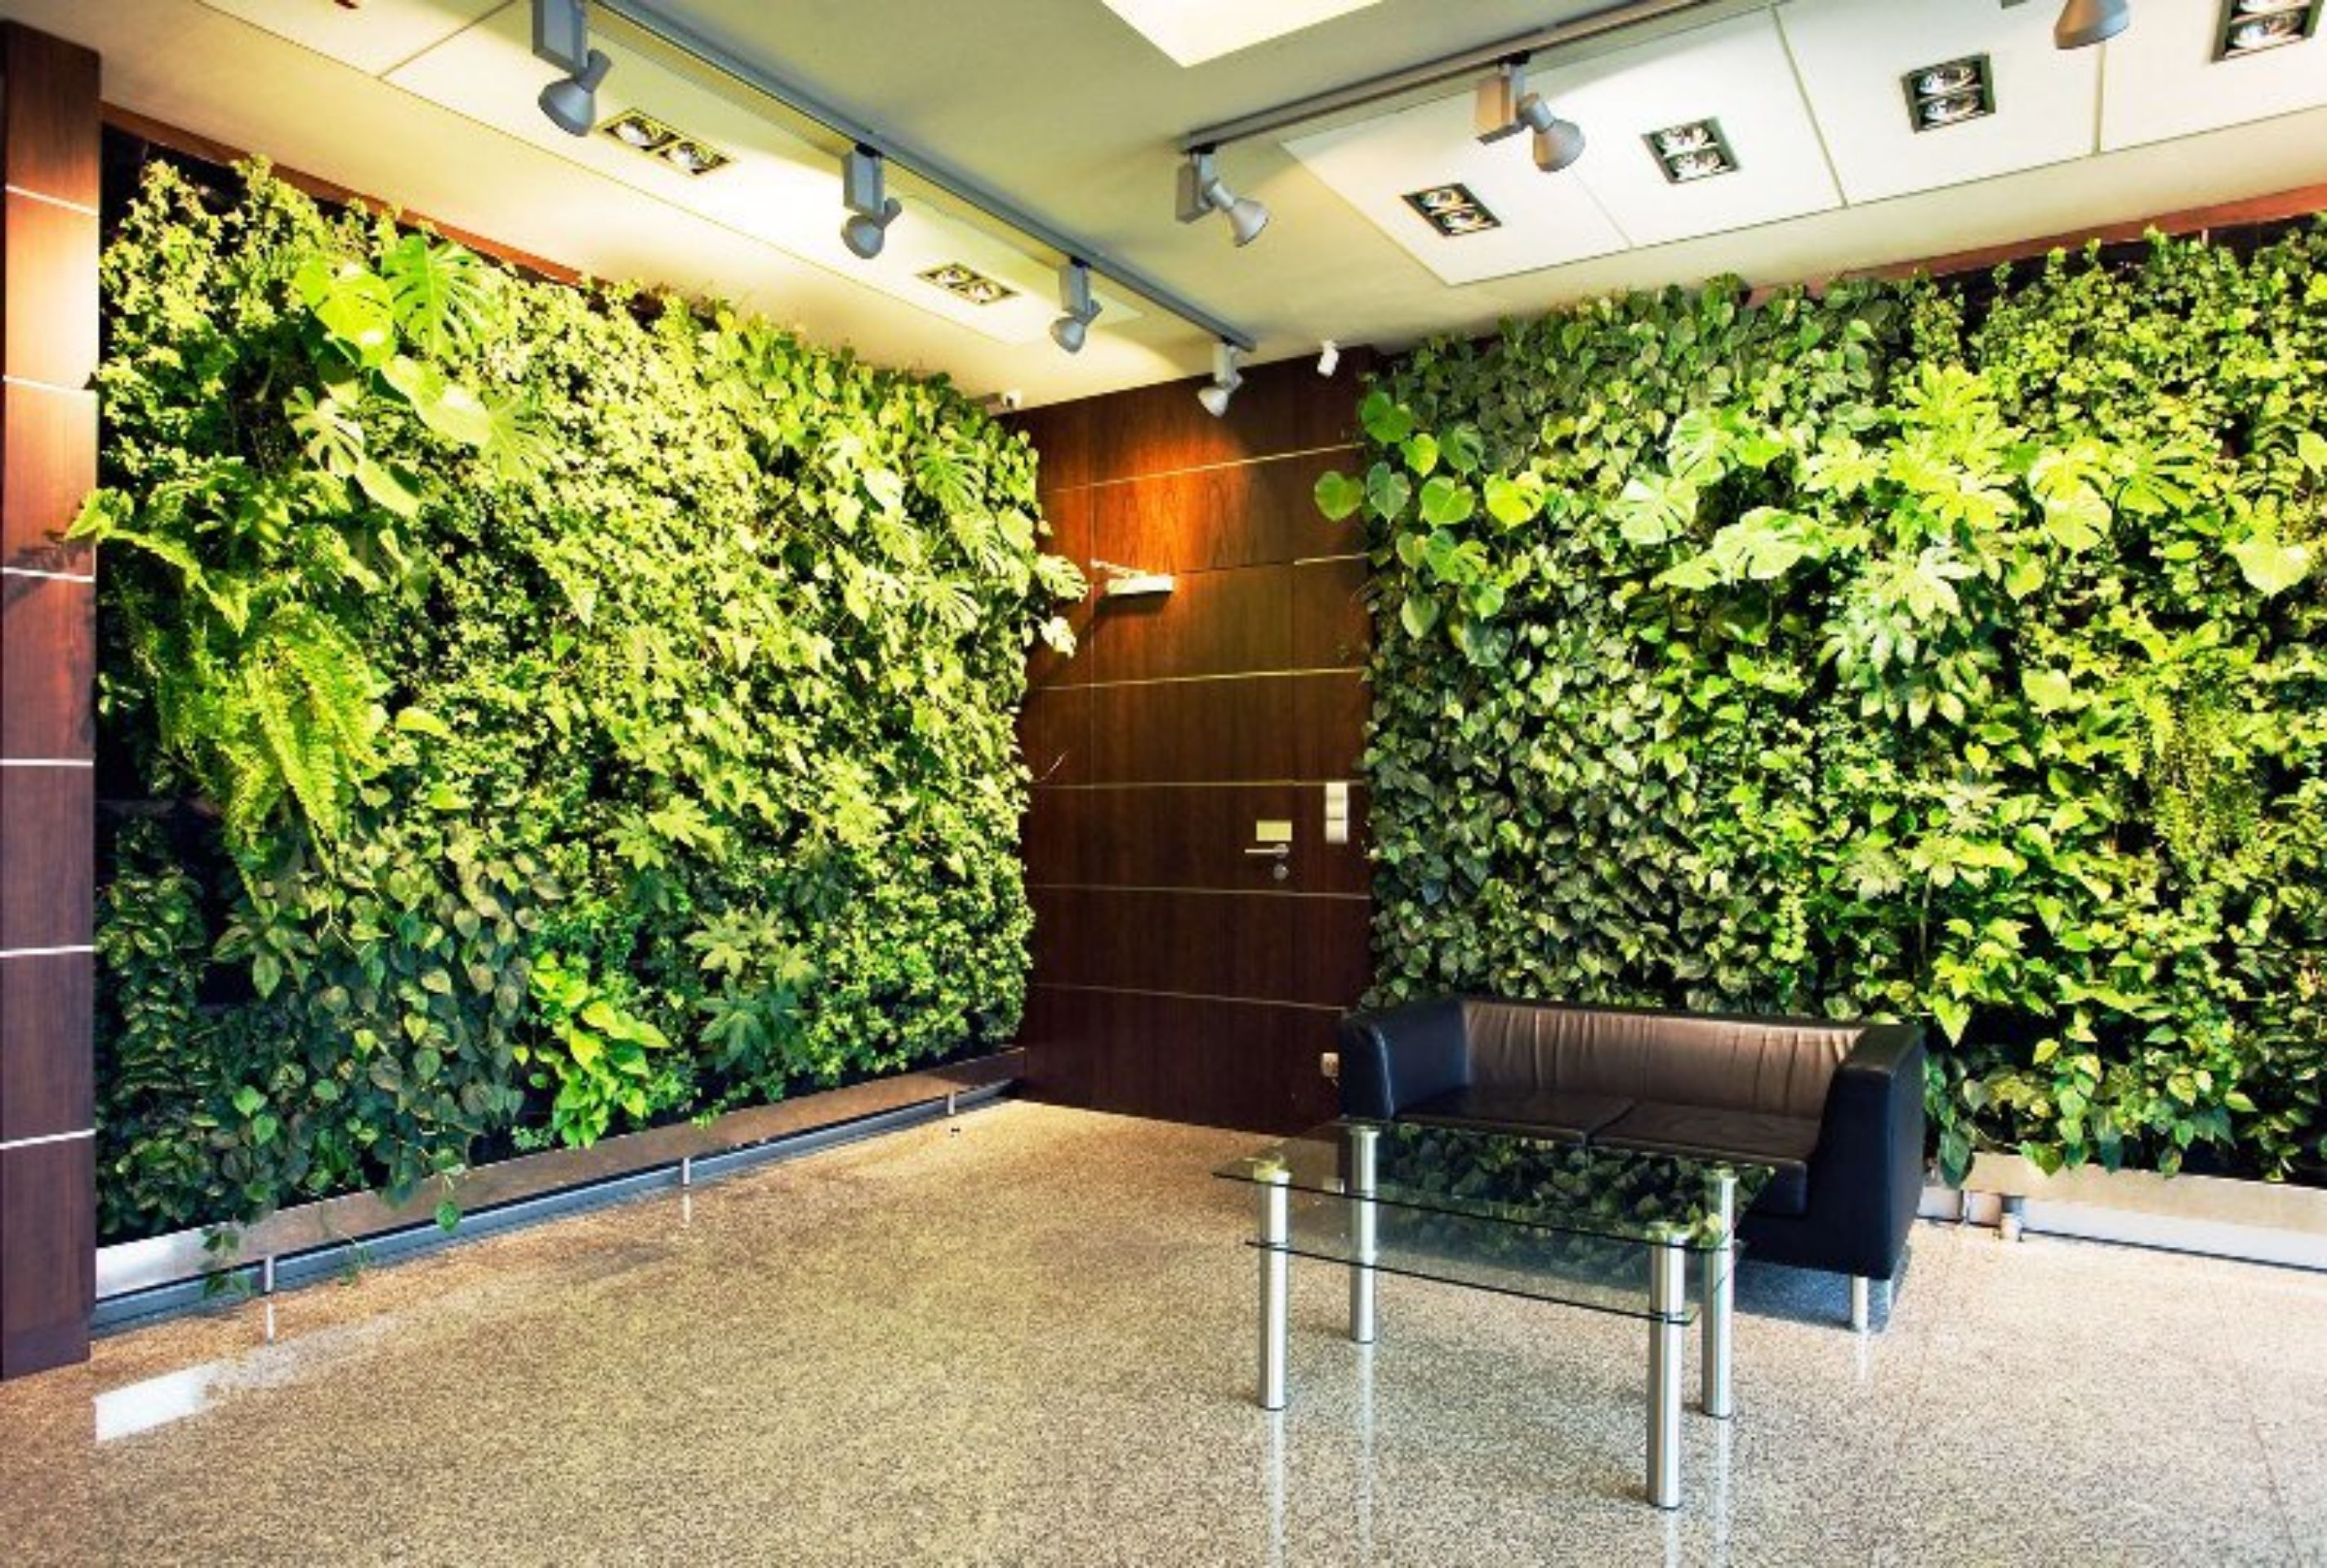  стена в квартире:  стена из растений, искусственная .